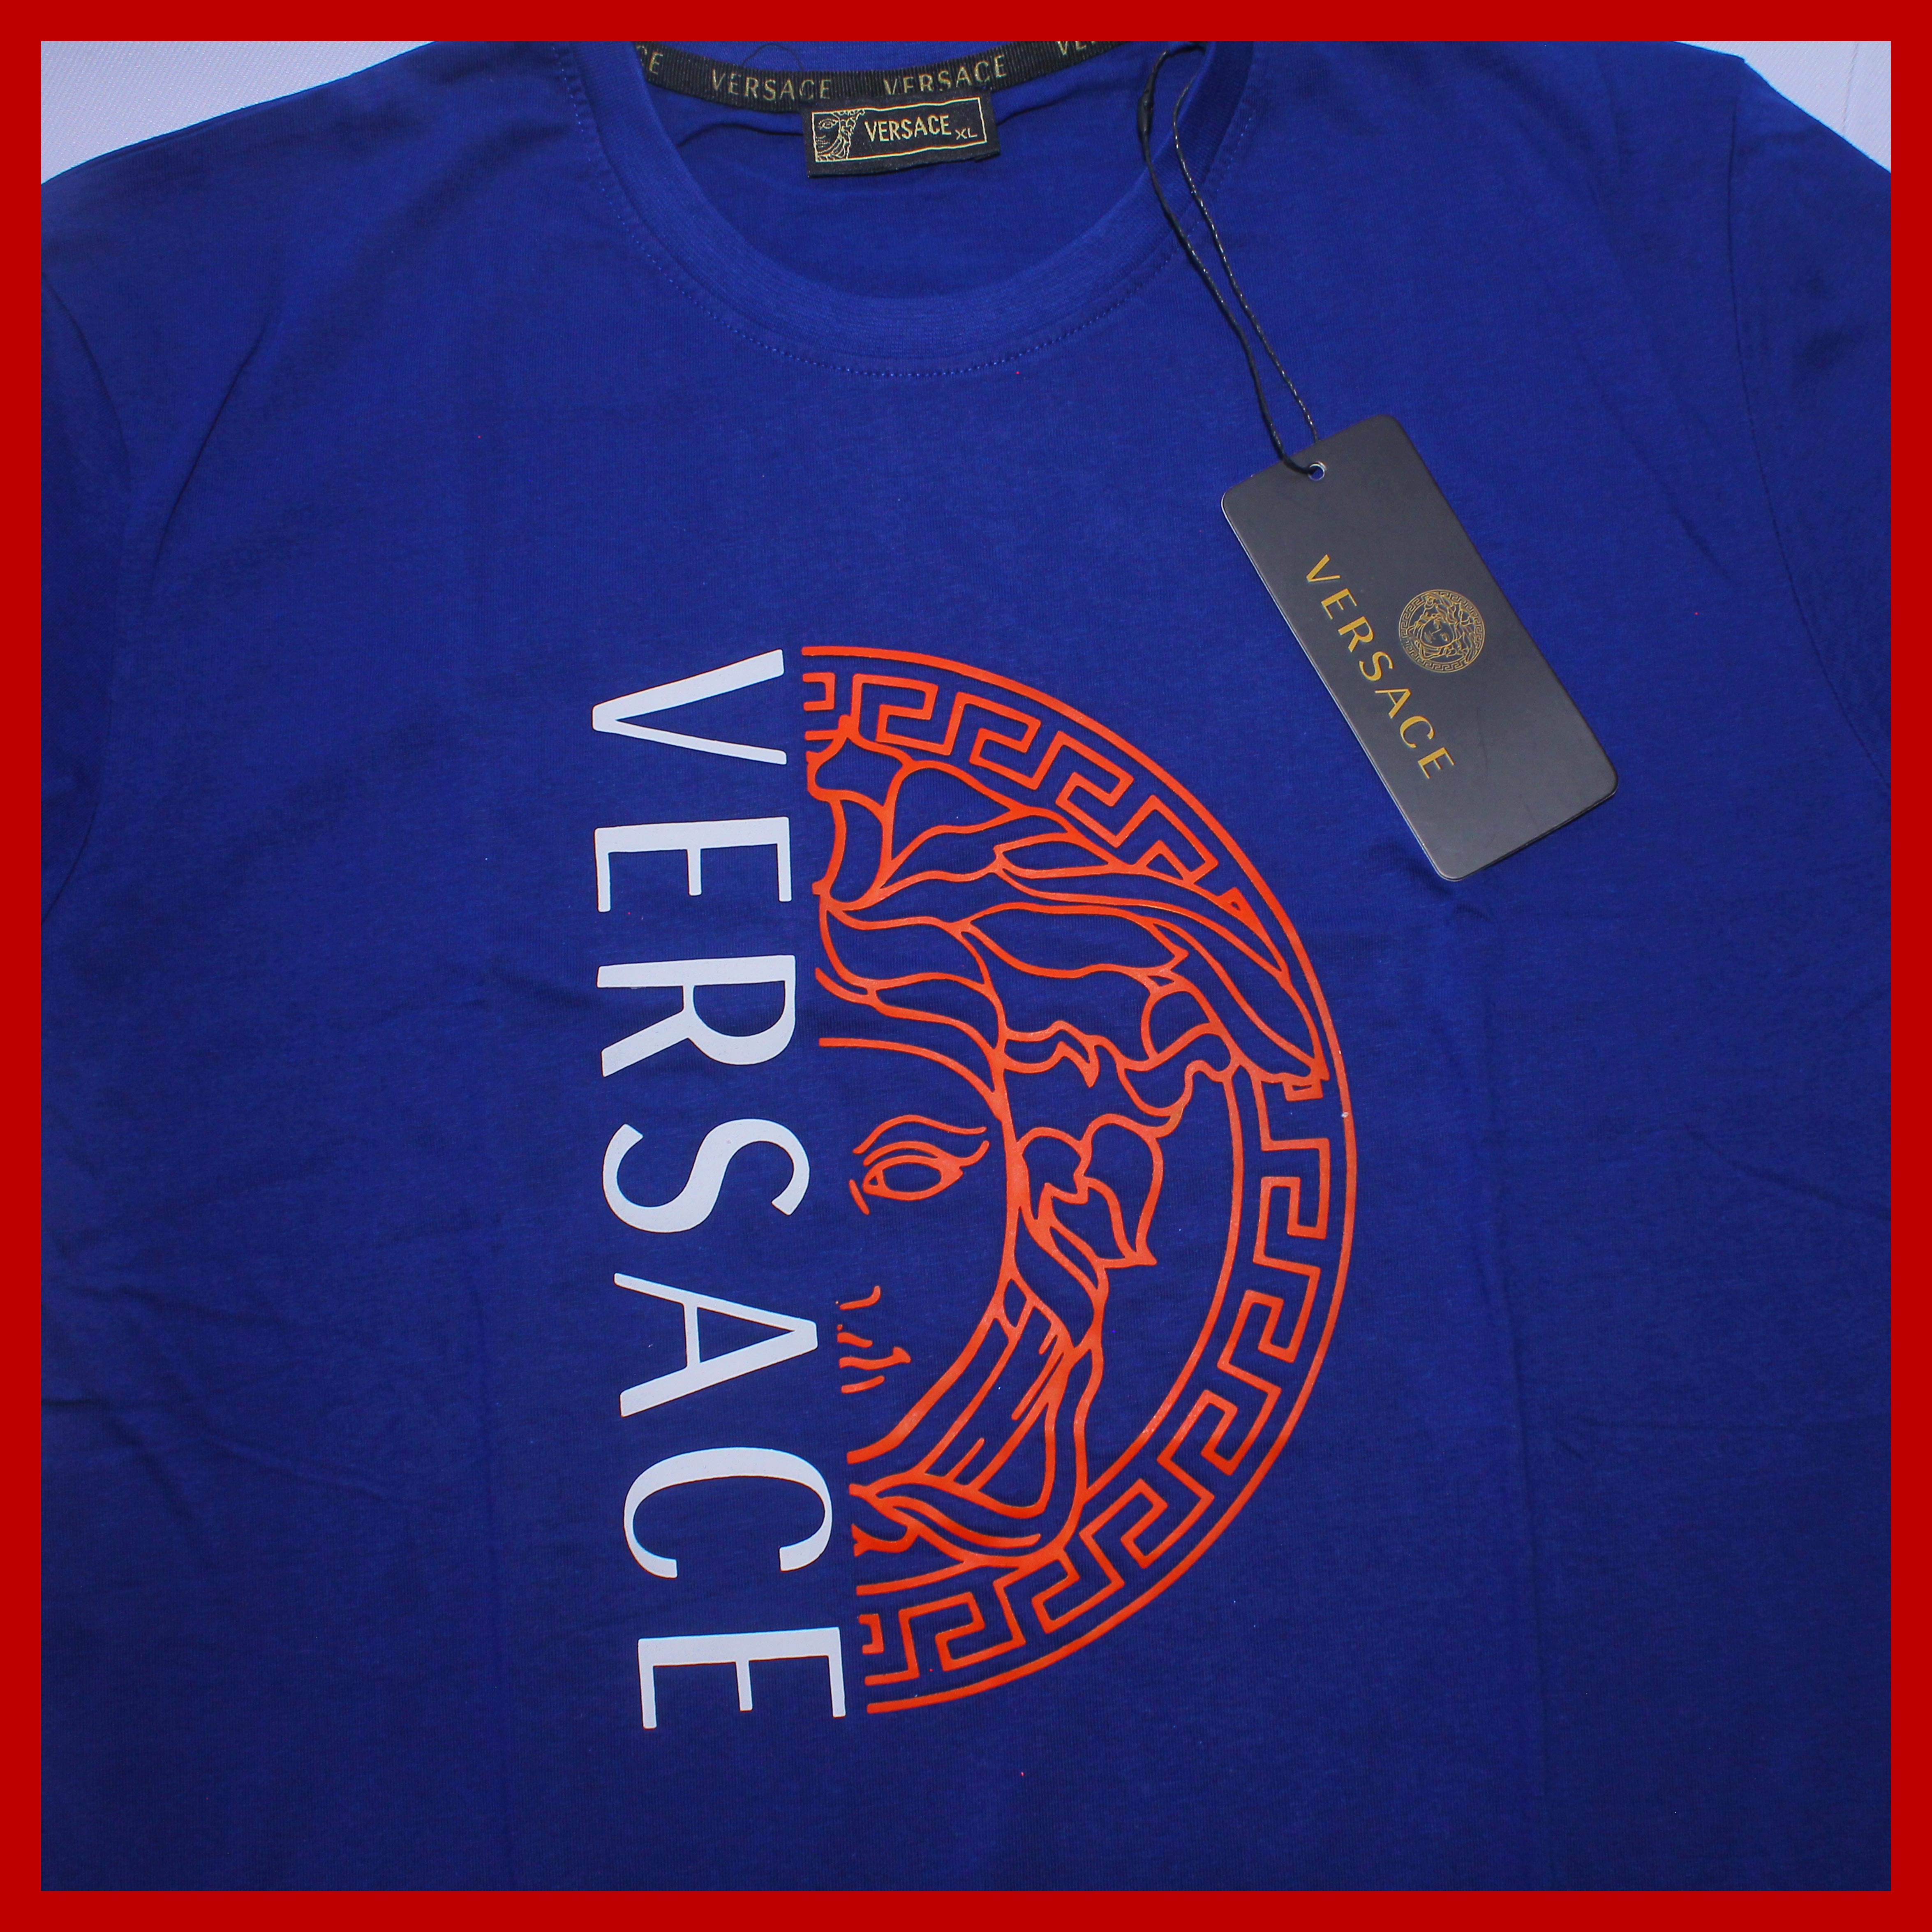 versace tee shirt price